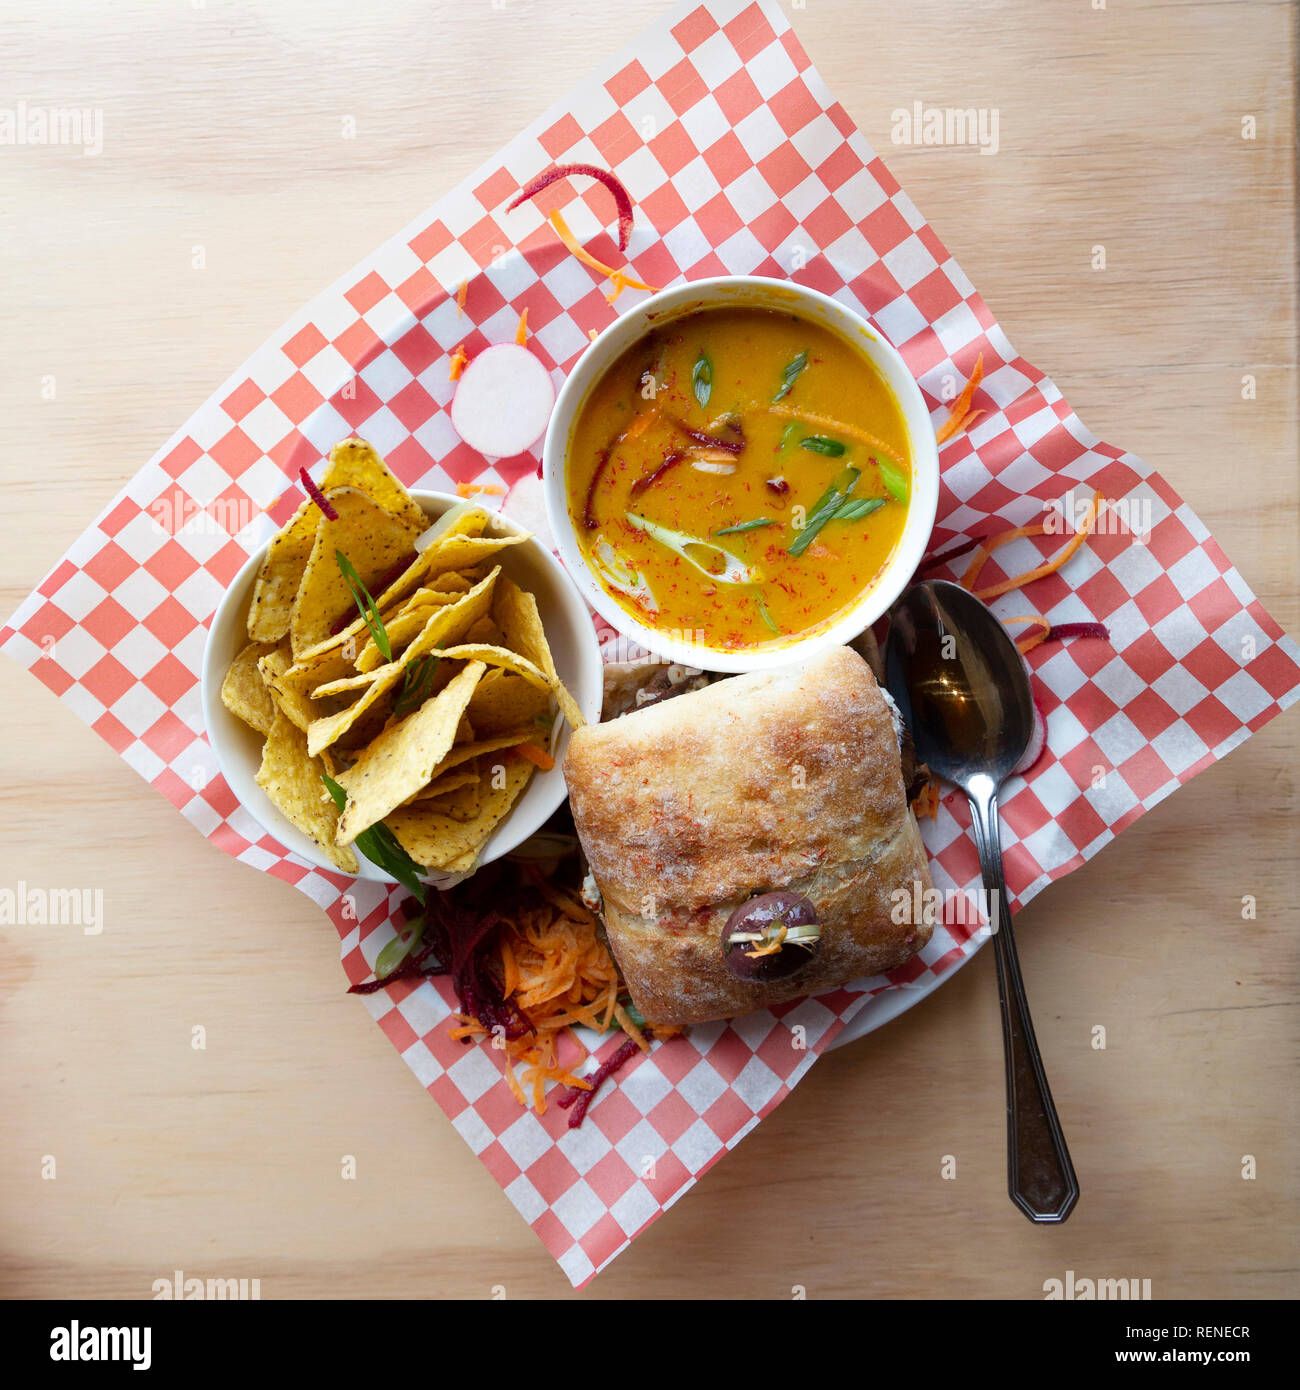 Ein Mittagessen mit einem Burger, Suppe und Tortilla Chips in ländlichen Quebec, Kanada serviert. Die Küche ist scharf und im mexikanischen Stil Aromen. Stockfoto